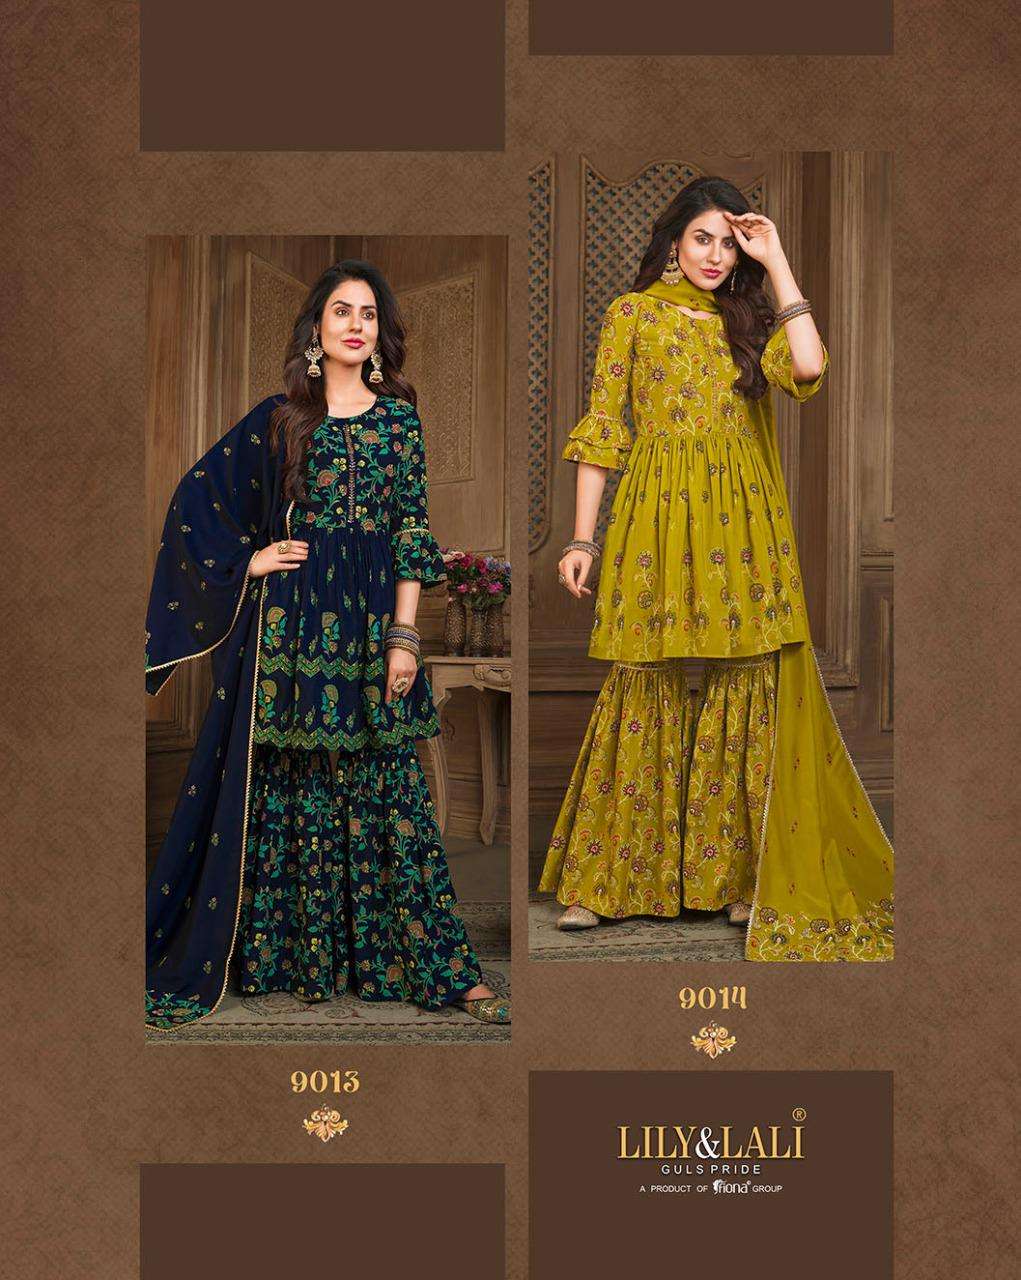 lily and lali elegant prints stich designer muslin salwar kameez wholesaler at surat  